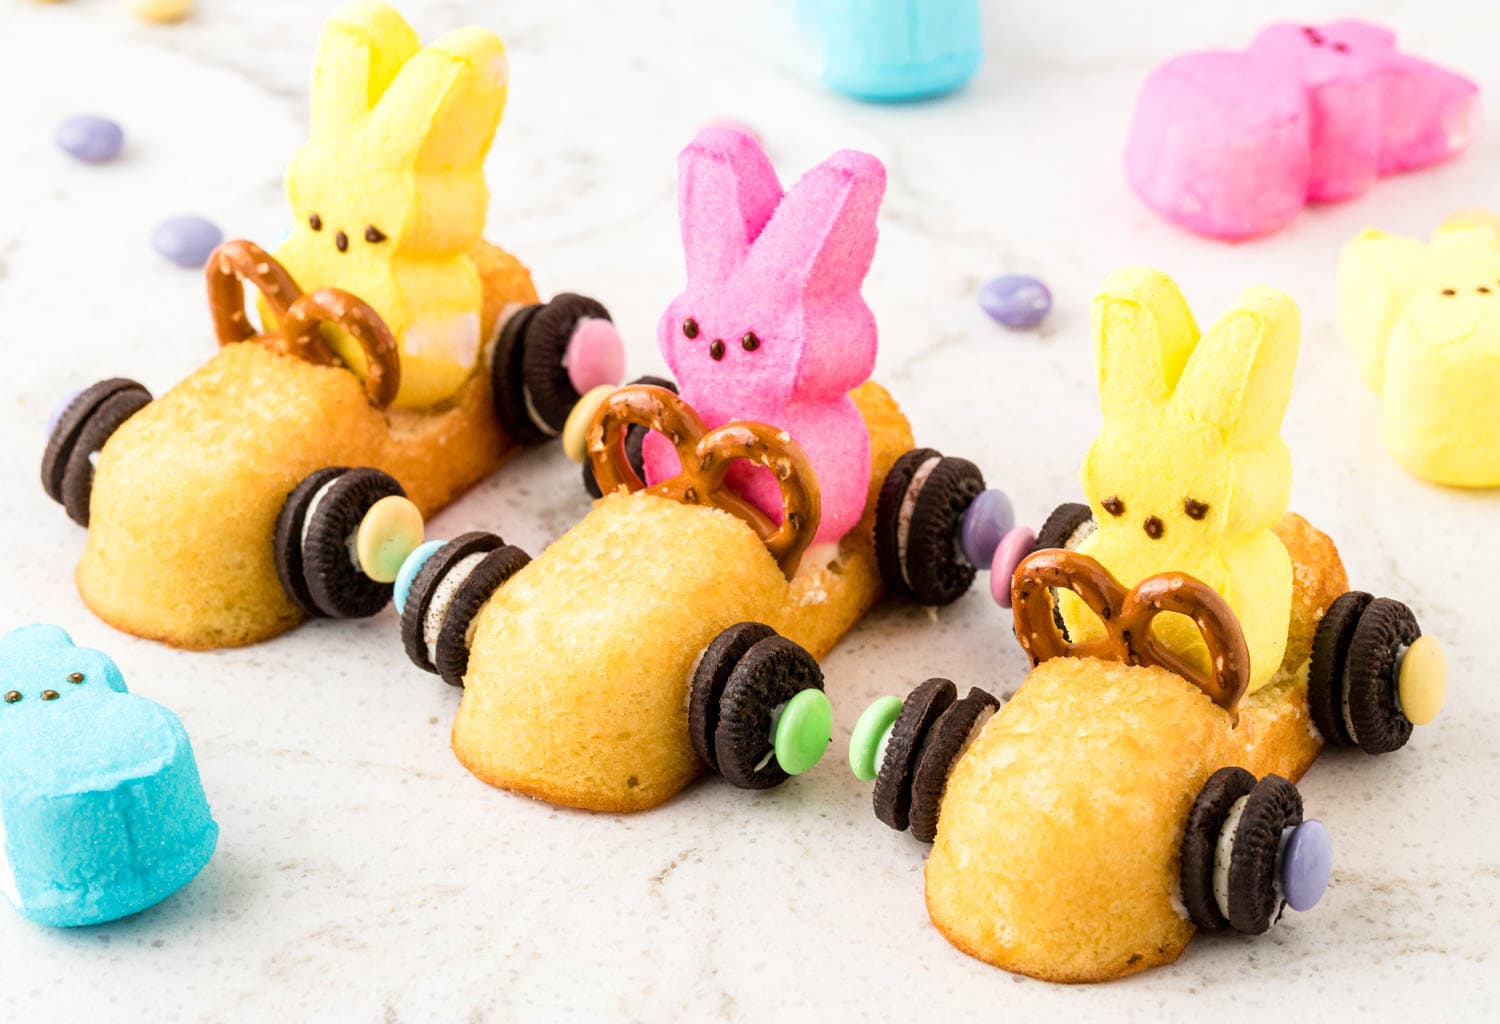 Twinkie bunny cars